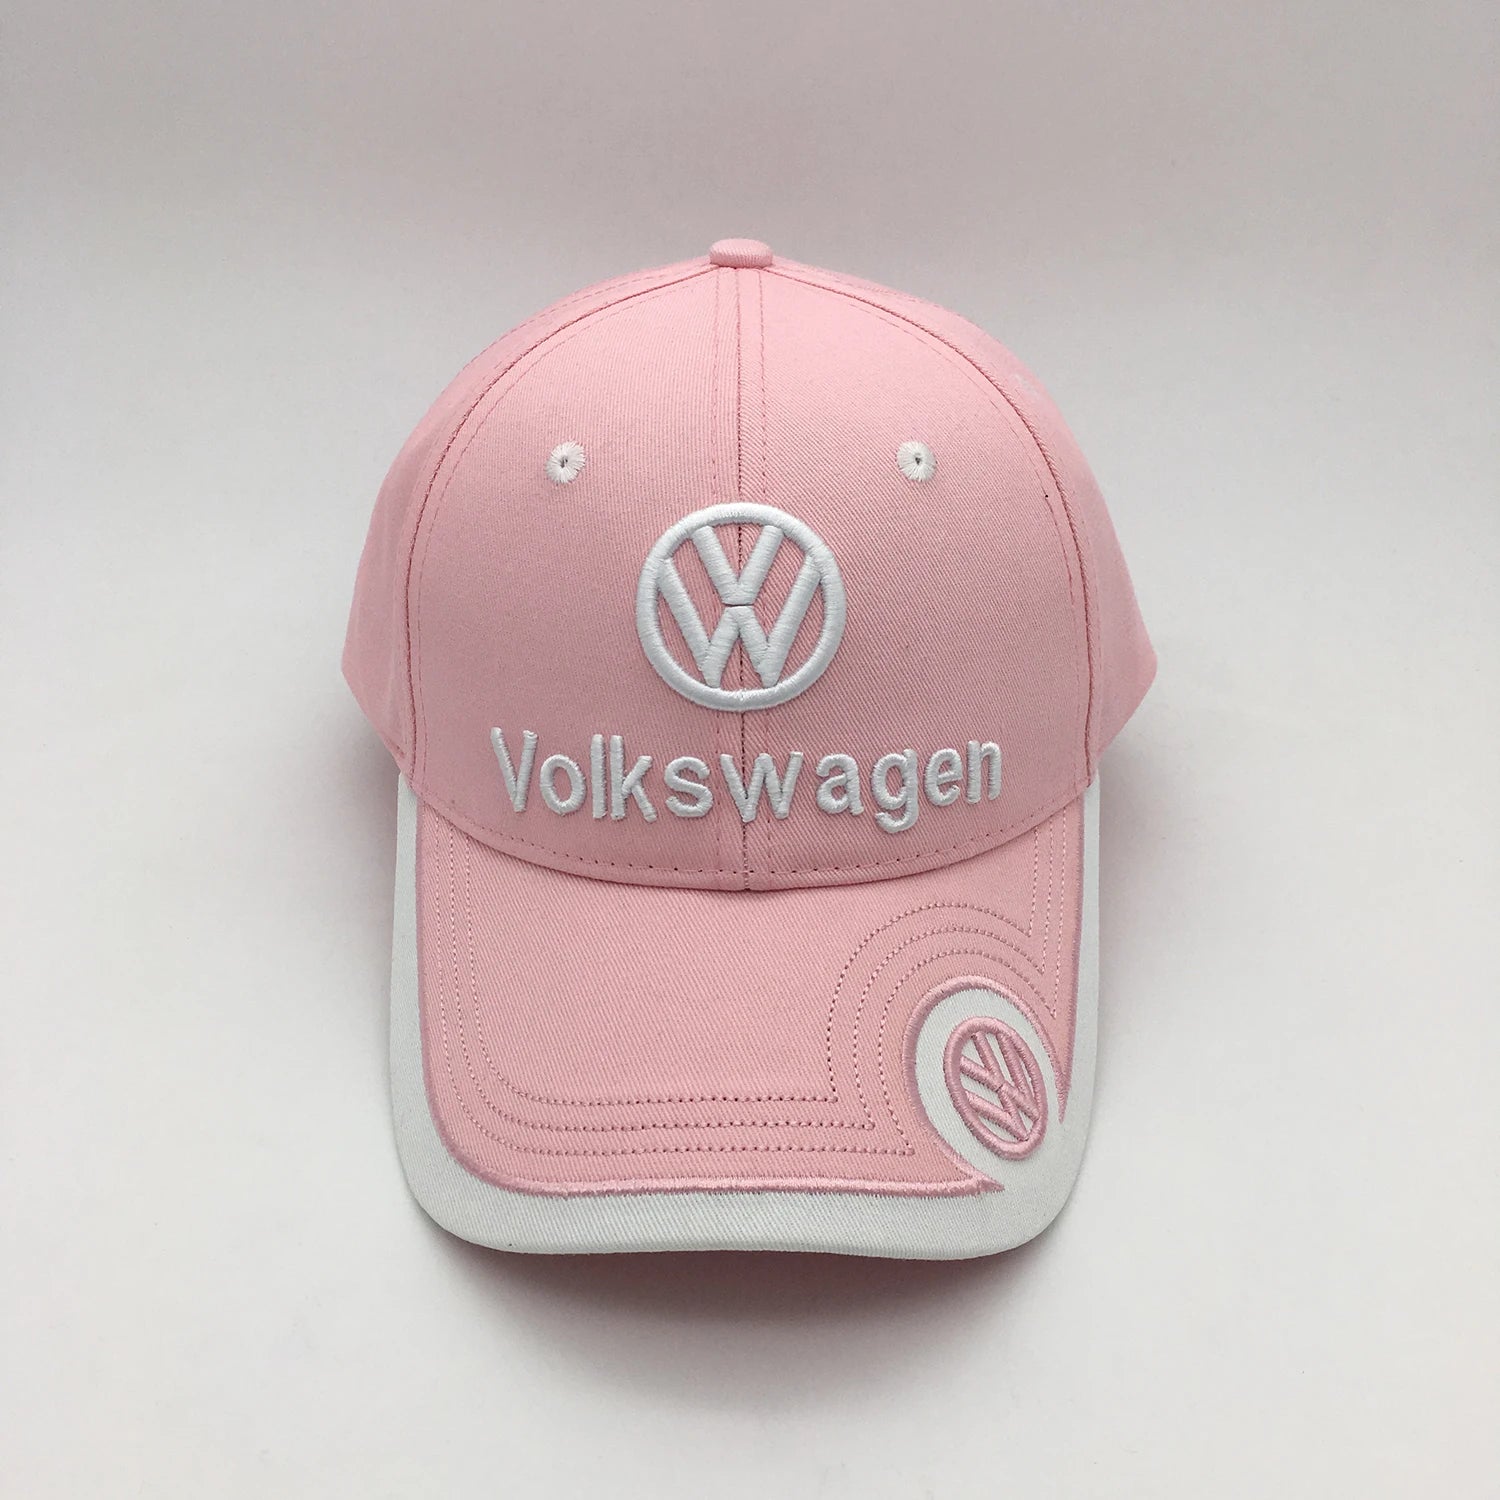 Volkswagen baseball cap